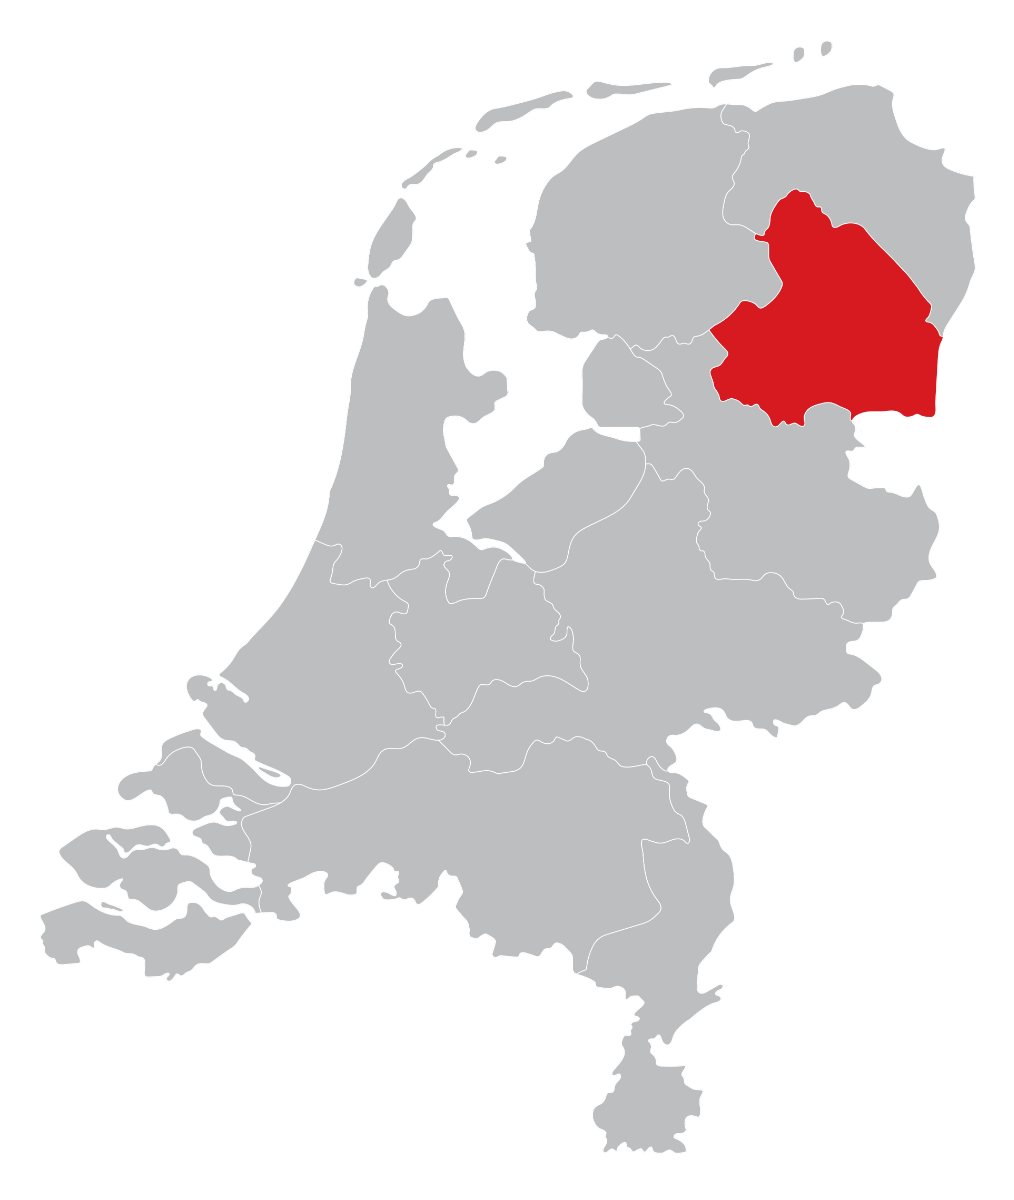 Dealers kaart in de provincie Drenthe, Assen, Hoogeveen, Emmen of Meppel